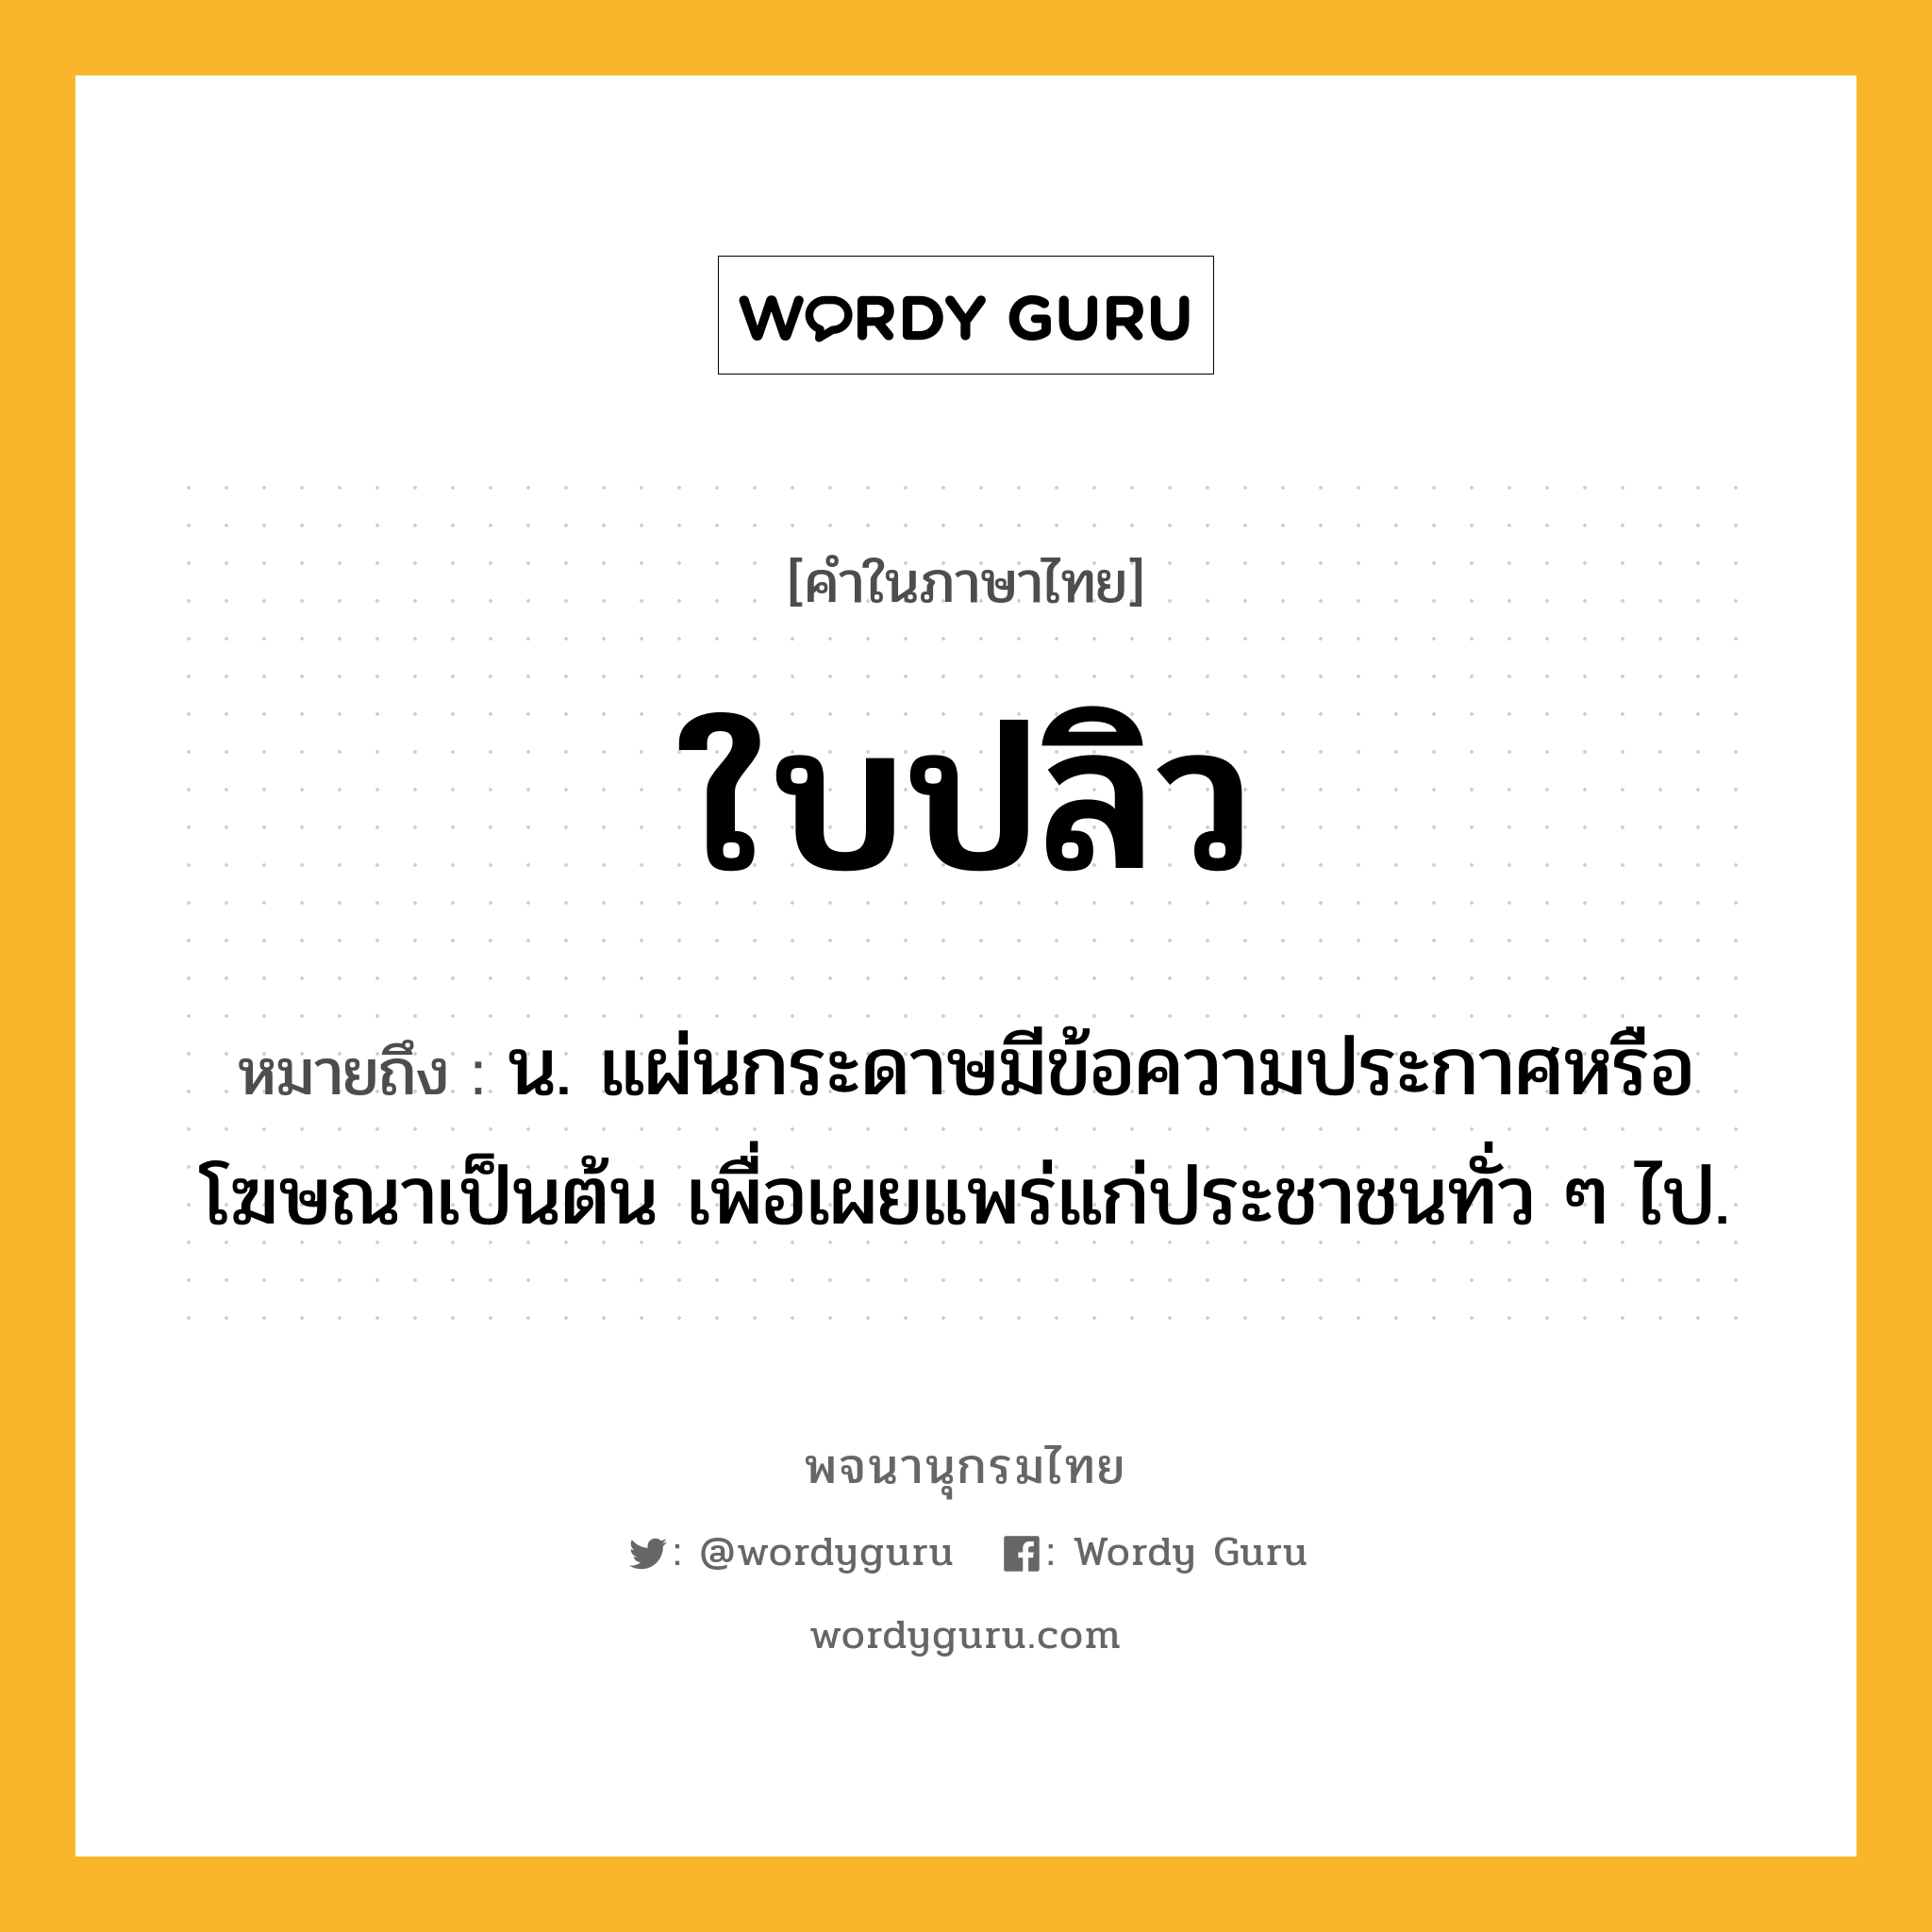 ใบปลิว หมายถึงอะไร?, คำในภาษาไทย ใบปลิว หมายถึง น. แผ่นกระดาษมีข้อความประกาศหรือโฆษณาเป็นต้น เพื่อเผยแพร่แก่ประชาชนทั่ว ๆ ไป.